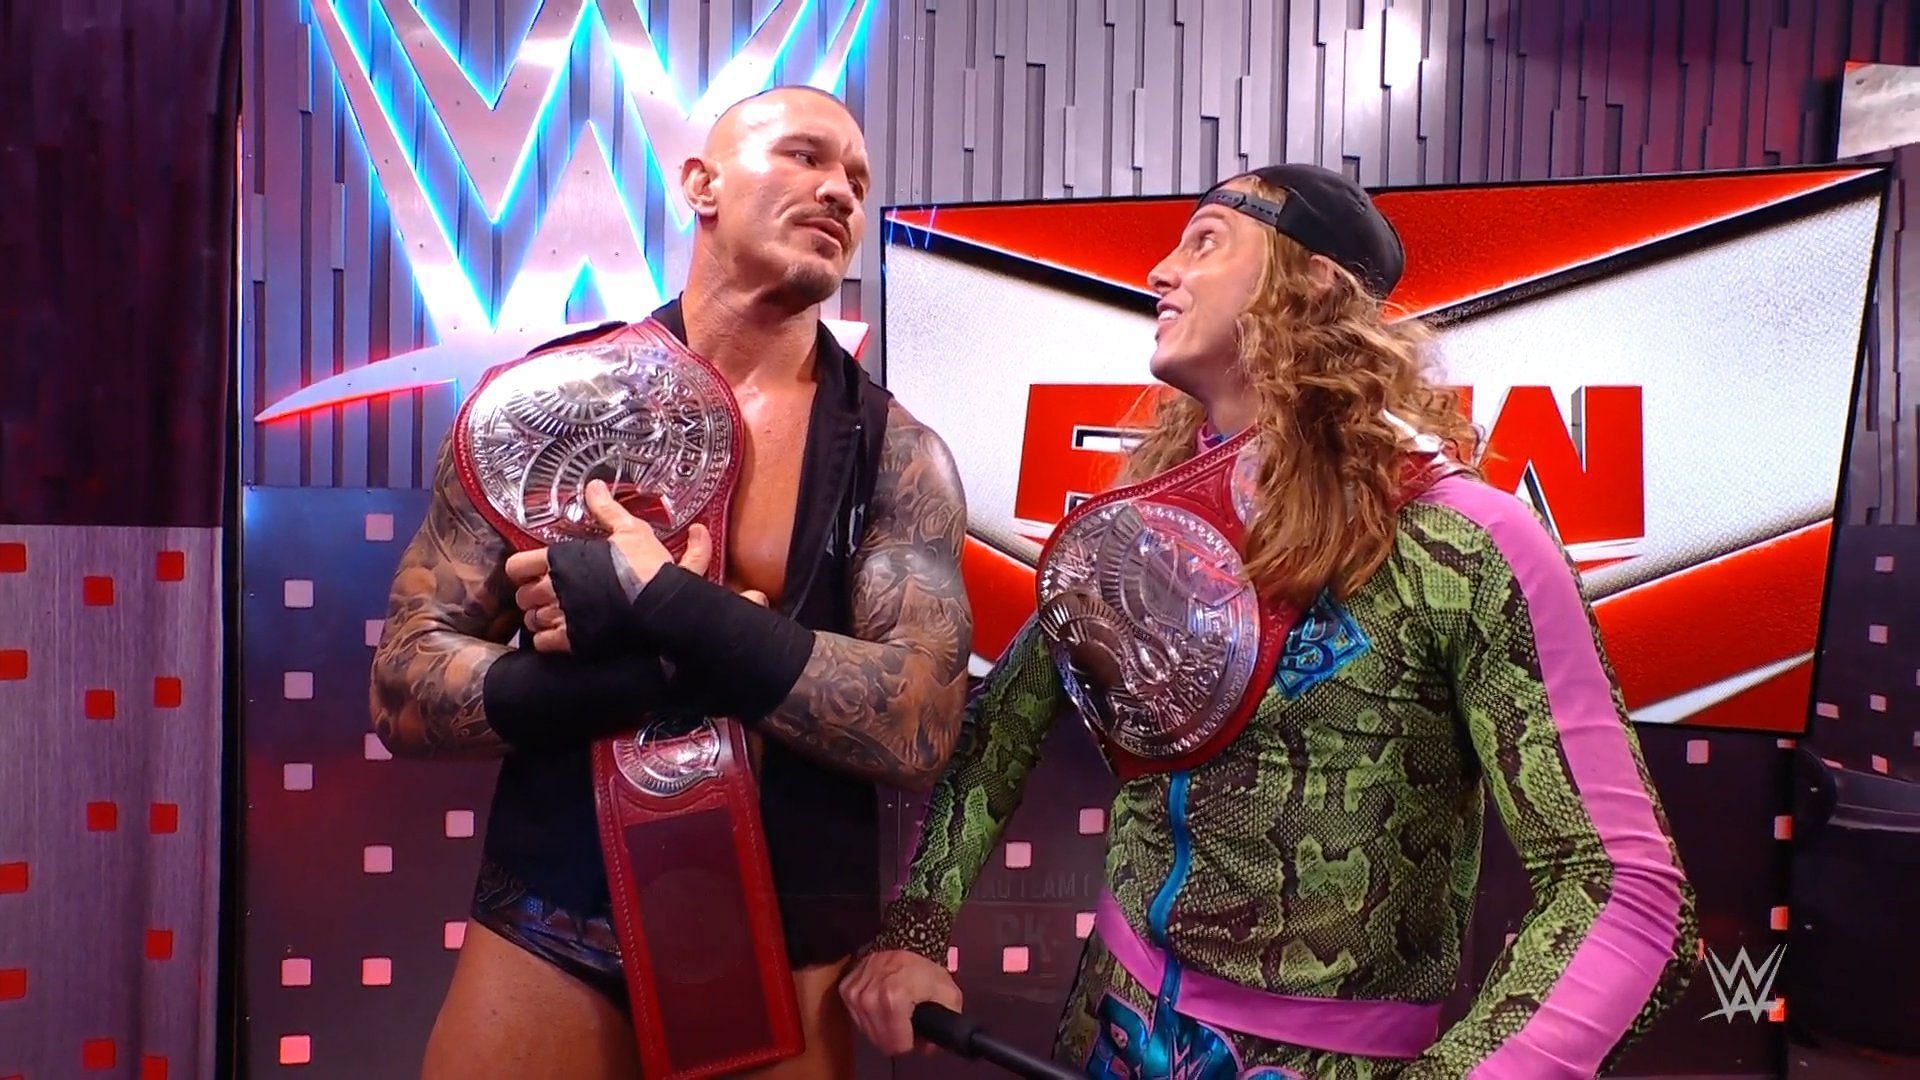 WWE RAW के मेन इवेंट में विमेंस चैंपियनशिप के लिए जबरदस्त मैच हुआ 